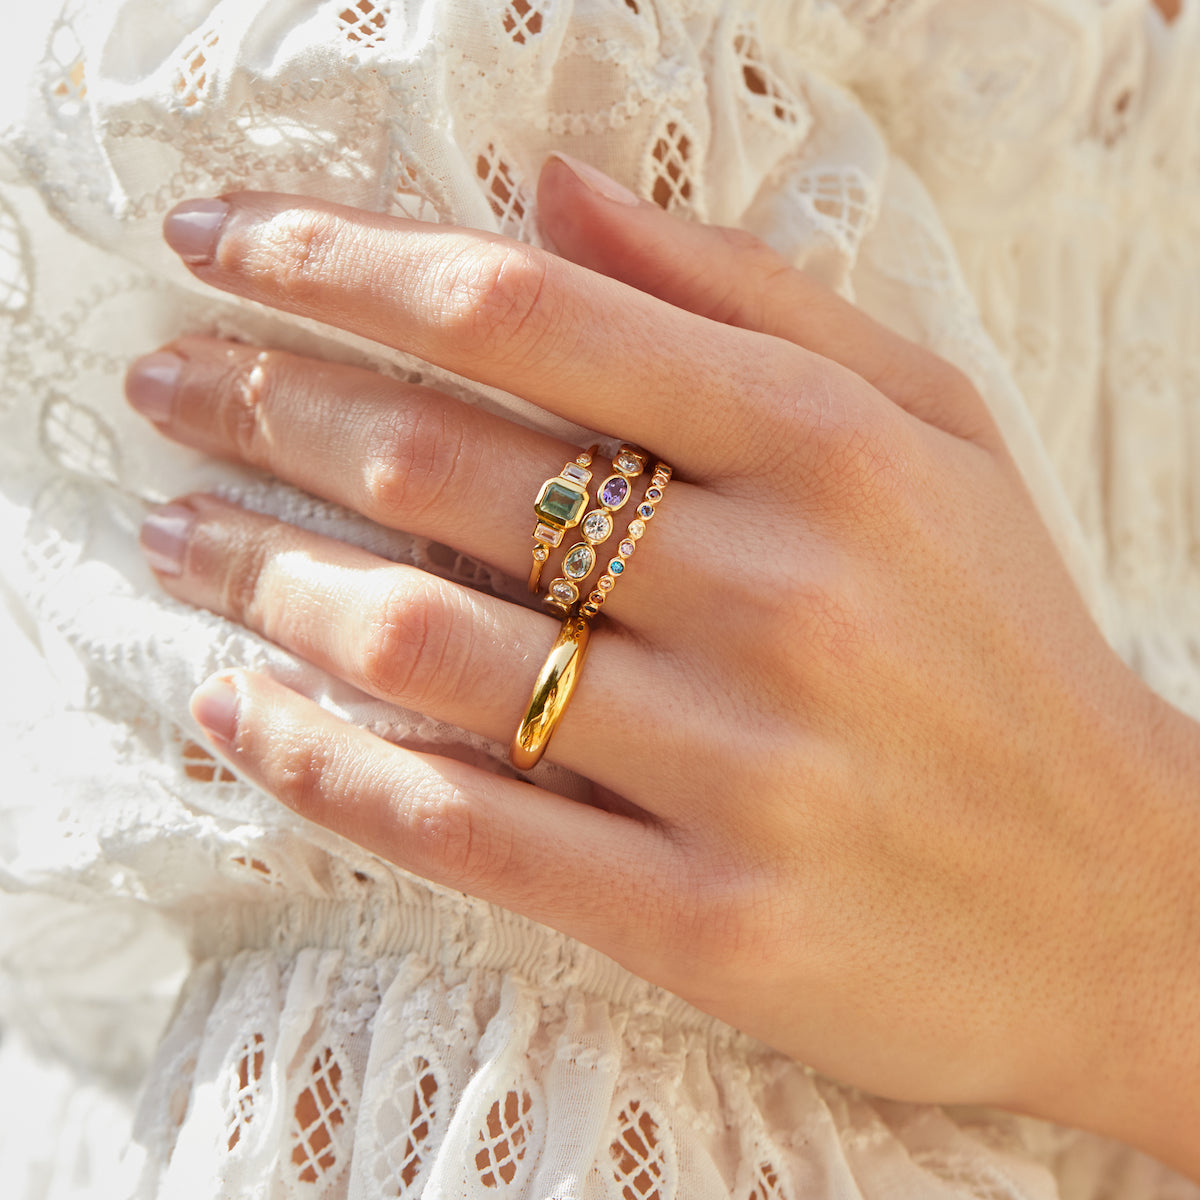 Carrie elizabeth pastel gemstone ring in gold vermeil